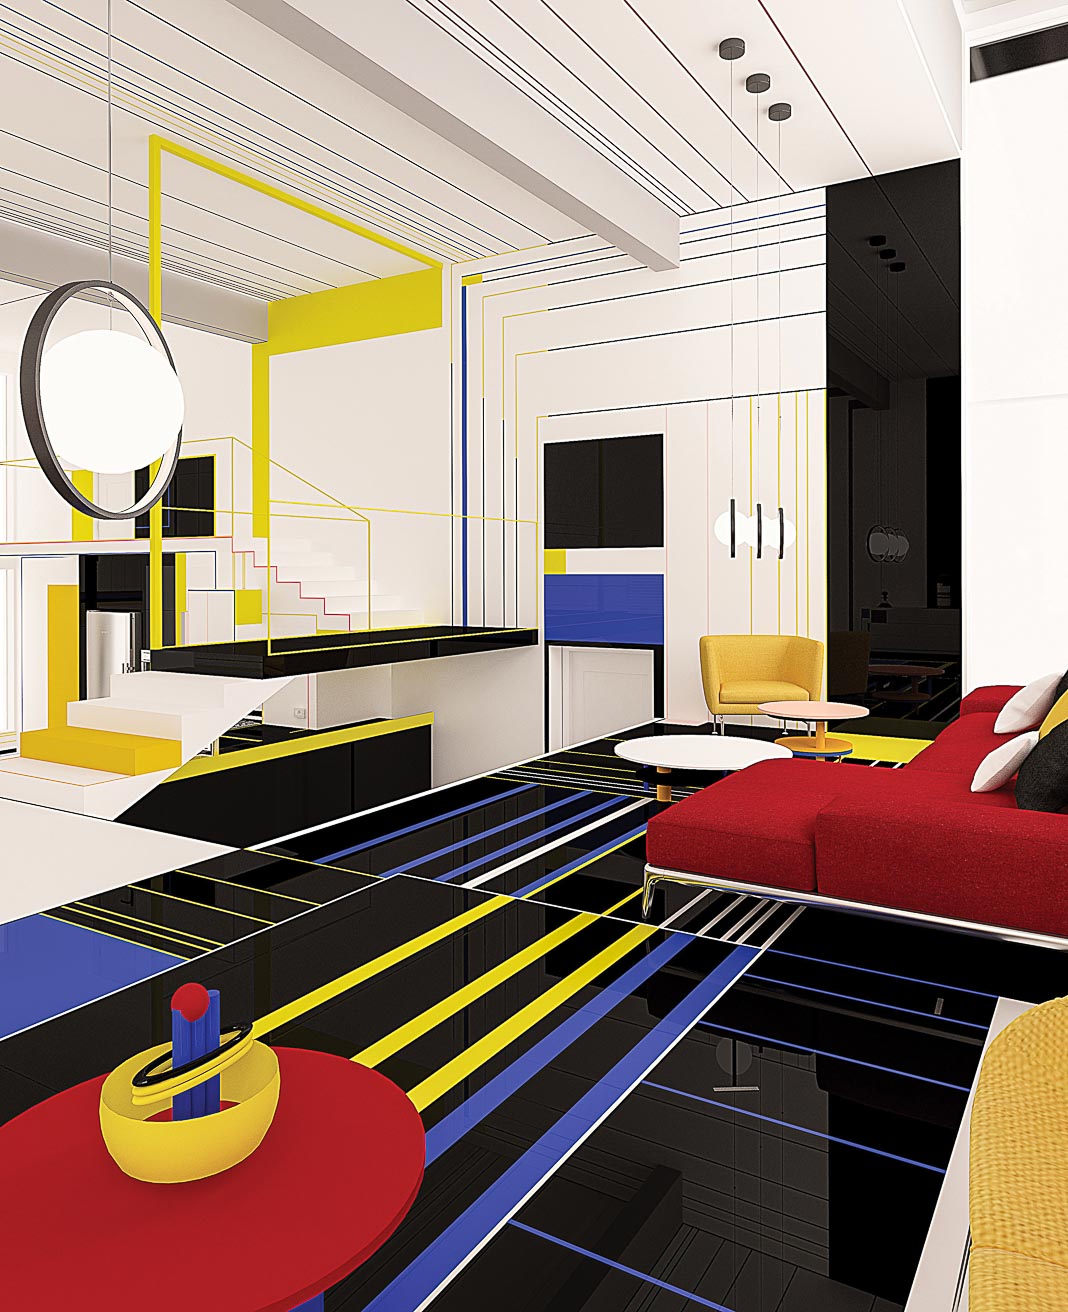 Bữa điểm tâm với Mondrian - Sống với sắc màu Piet Mondrian 9